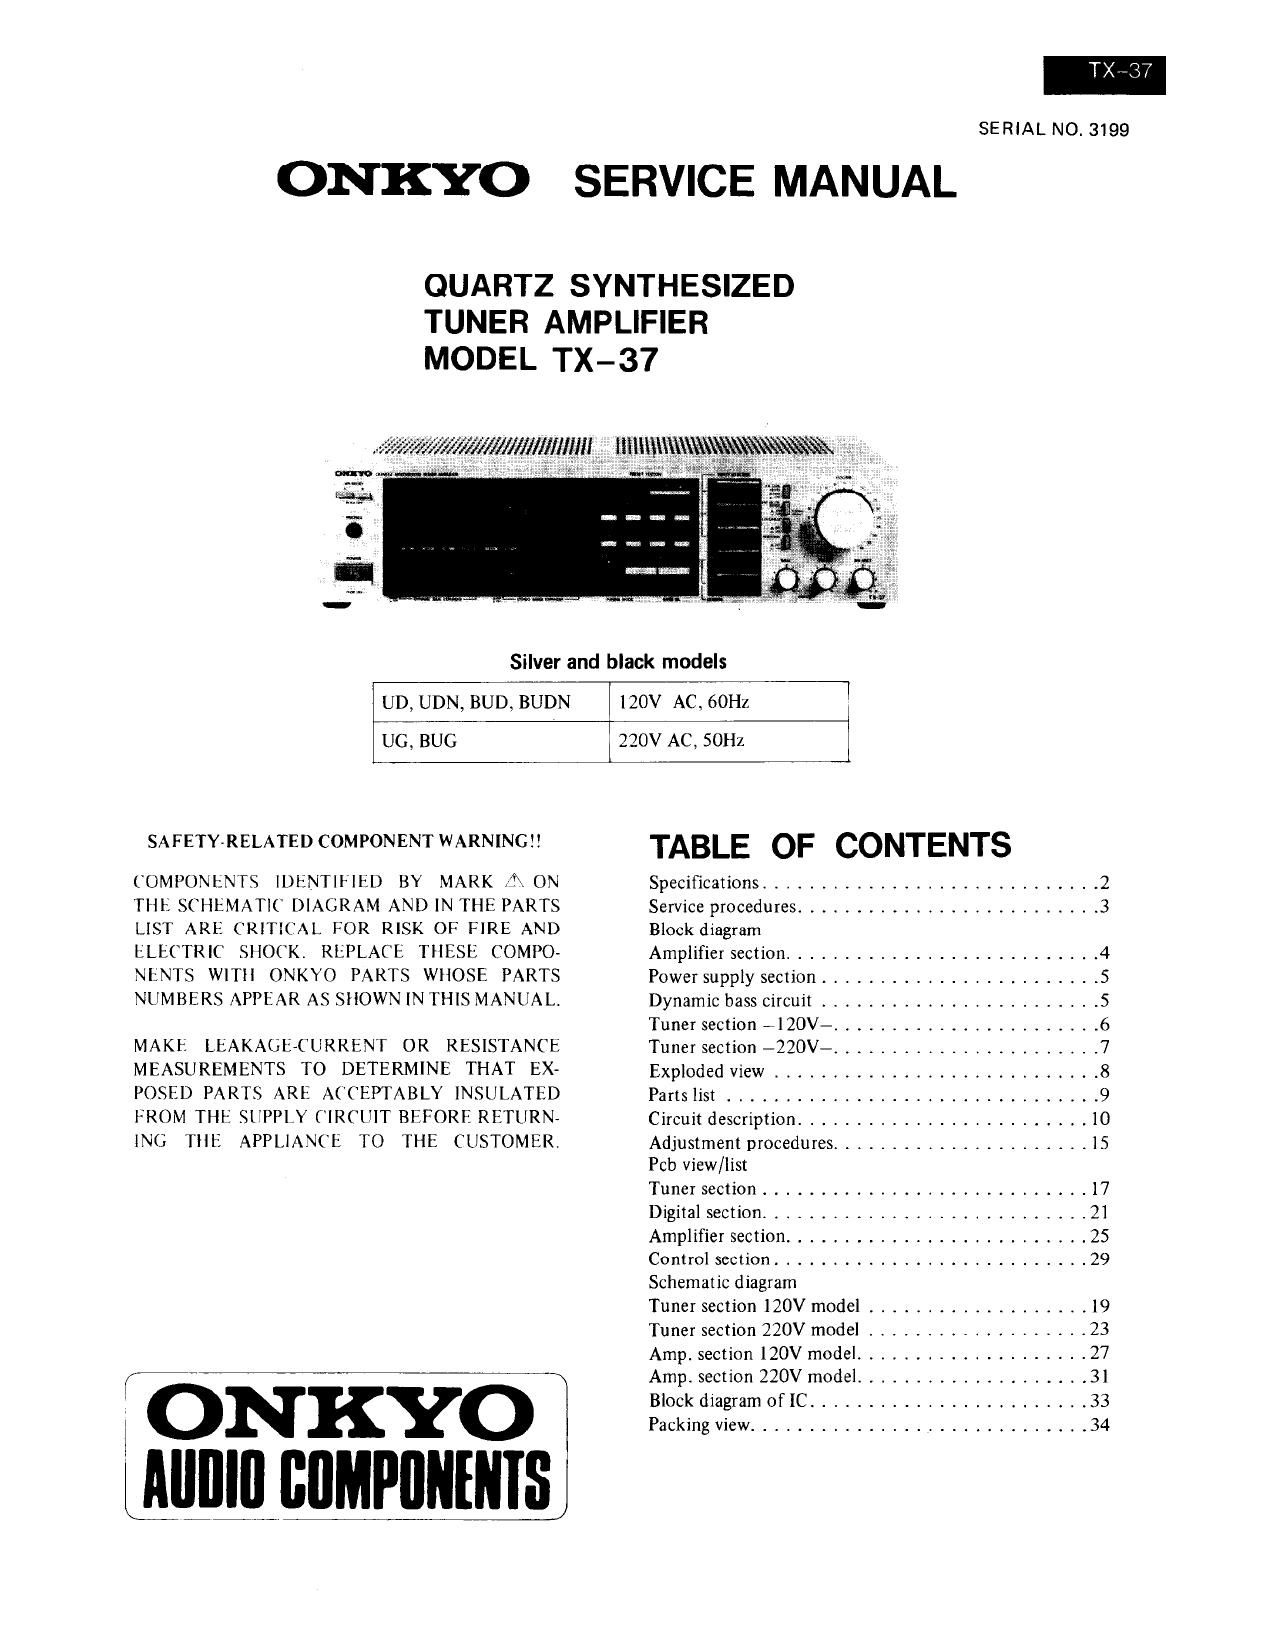 Onkyo TX 37 Service Manual